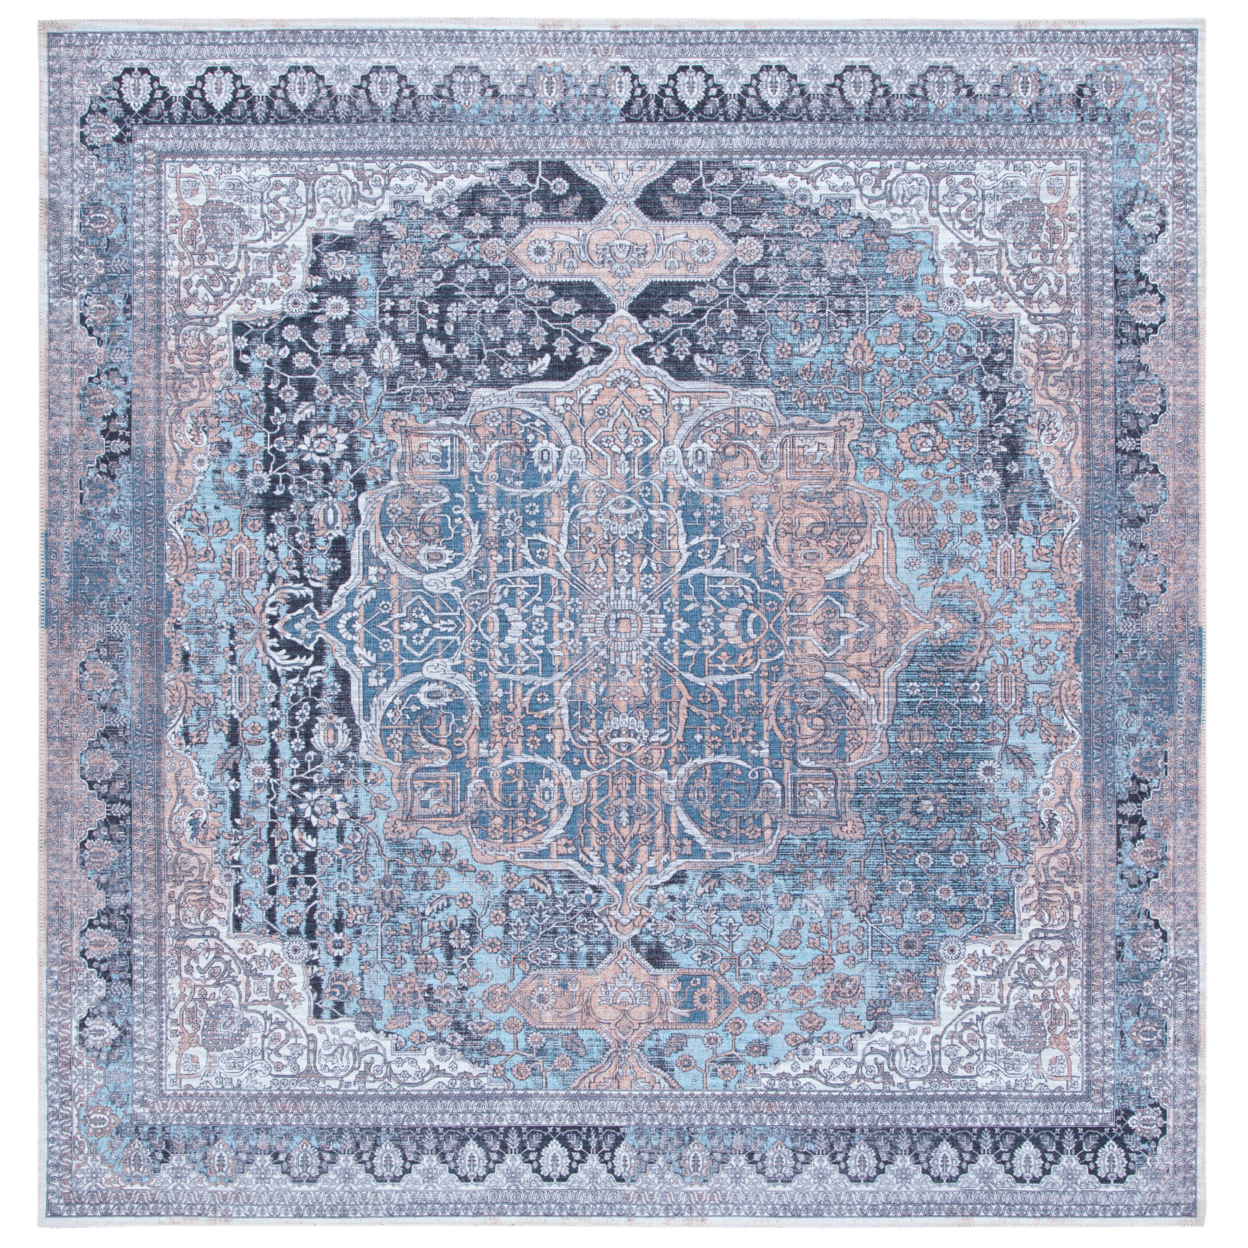 SAFAVIEH Serapi Collection SEP532A Ivory / Light Blue Rug - 6-7 X 6-7 Square